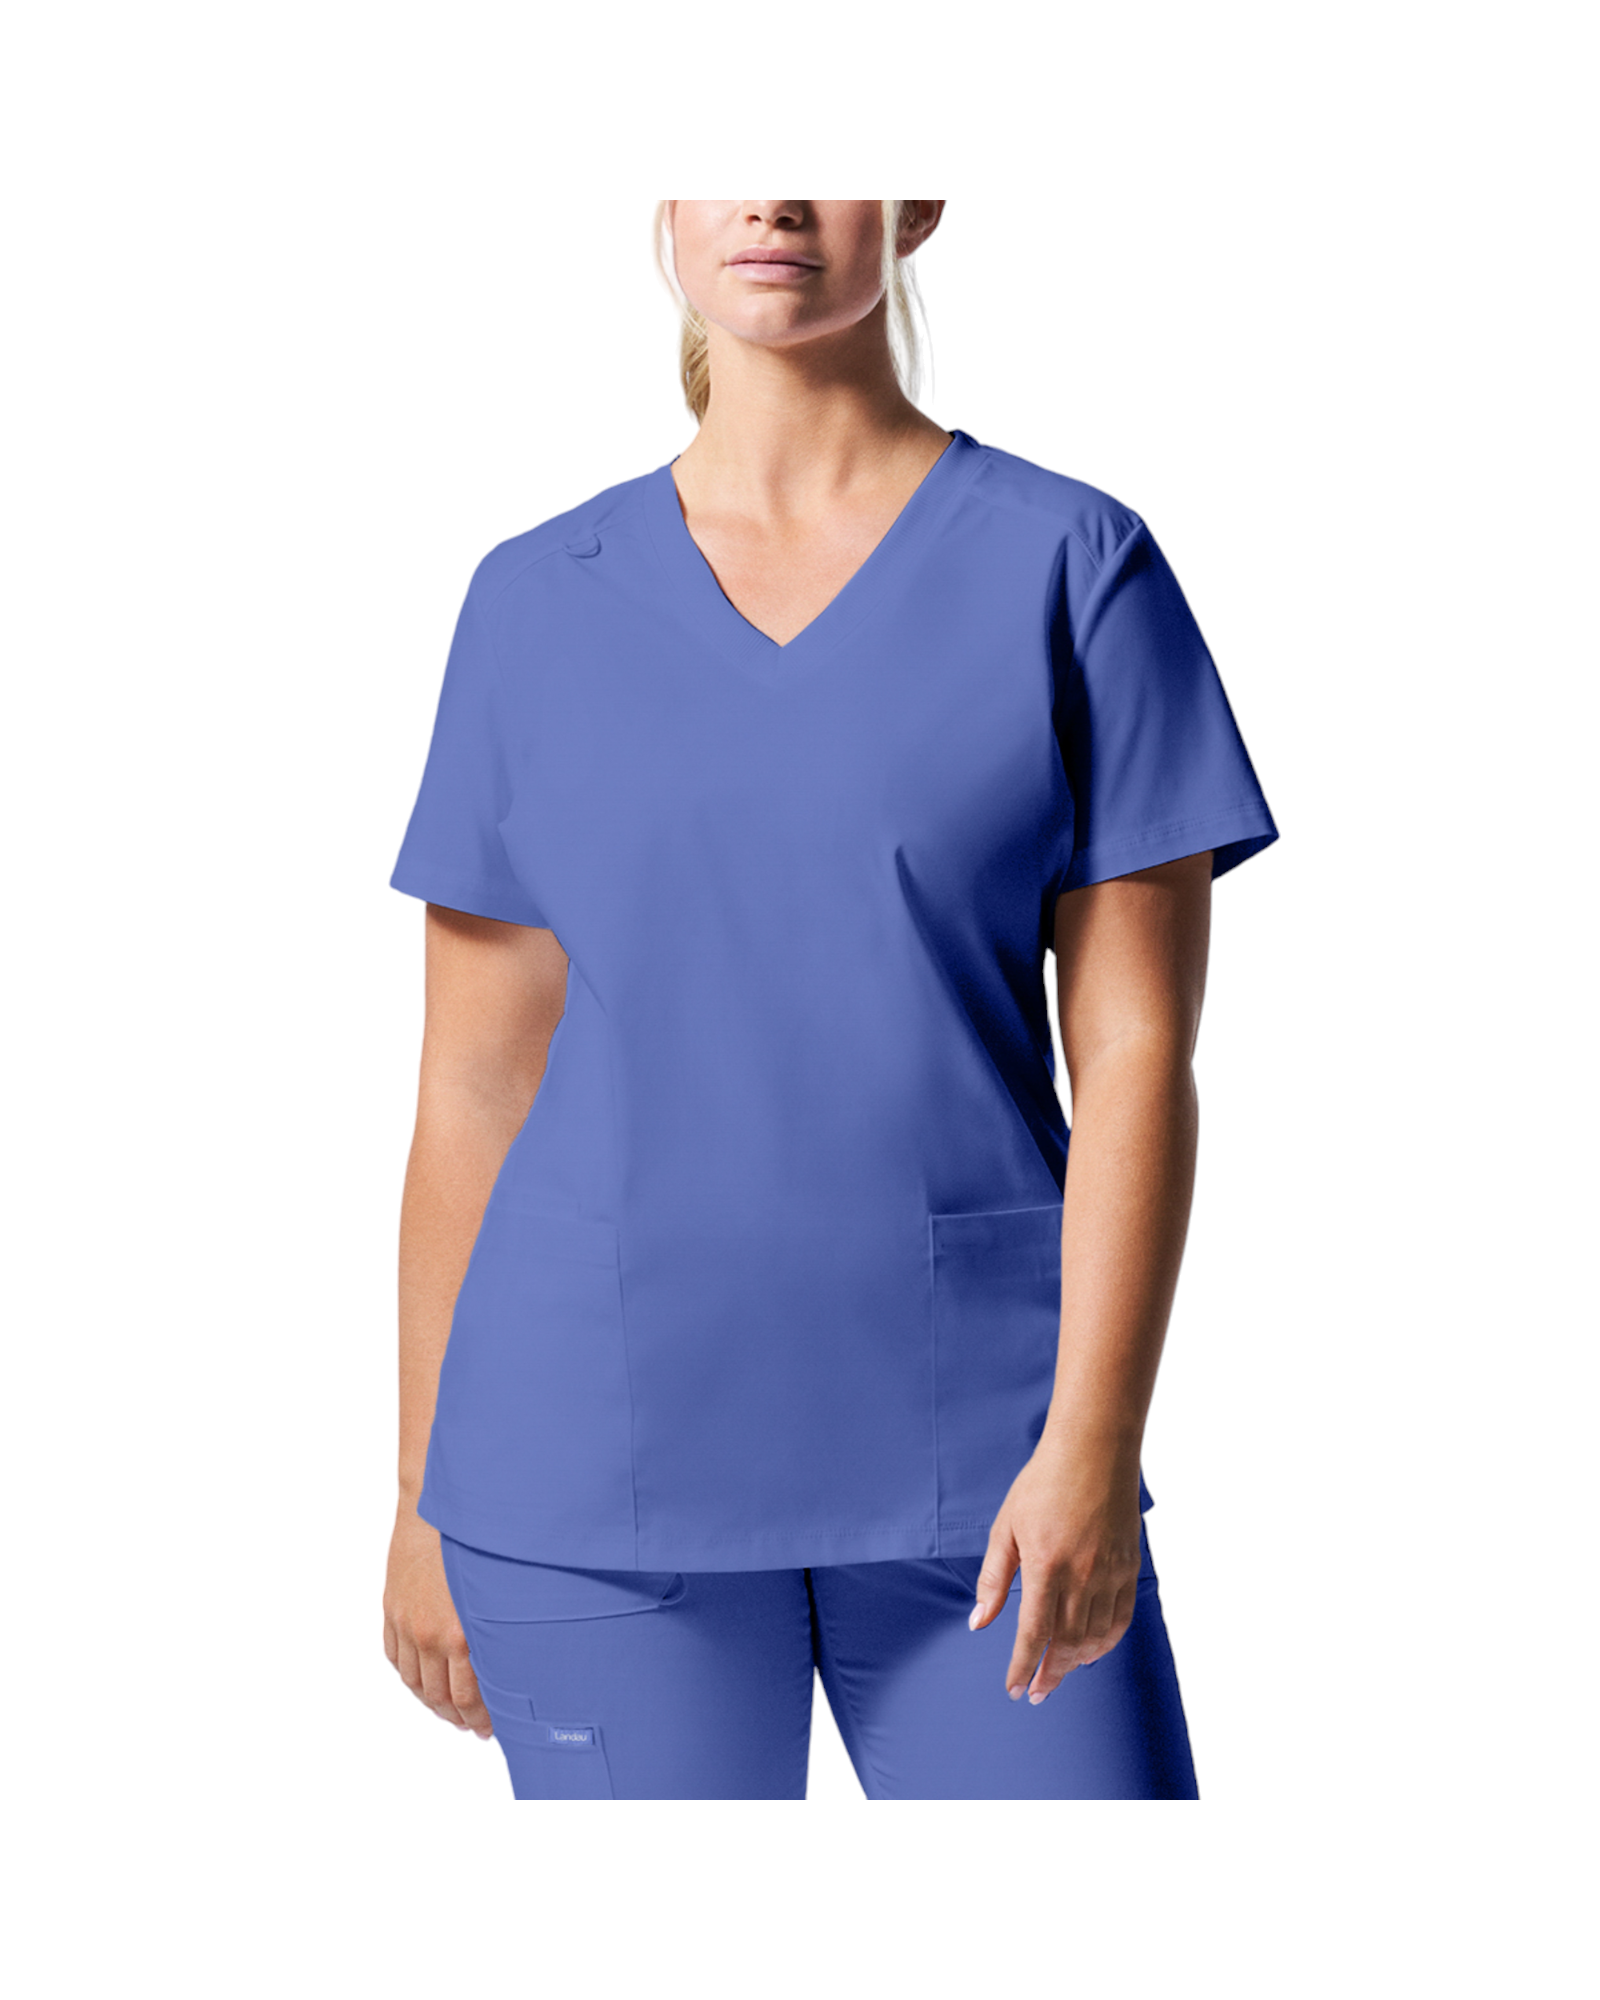 Uniforme de marque landau pour femmes. Travailleuses du domaine de la santé. LT105 Bleu Ciel, col en V.